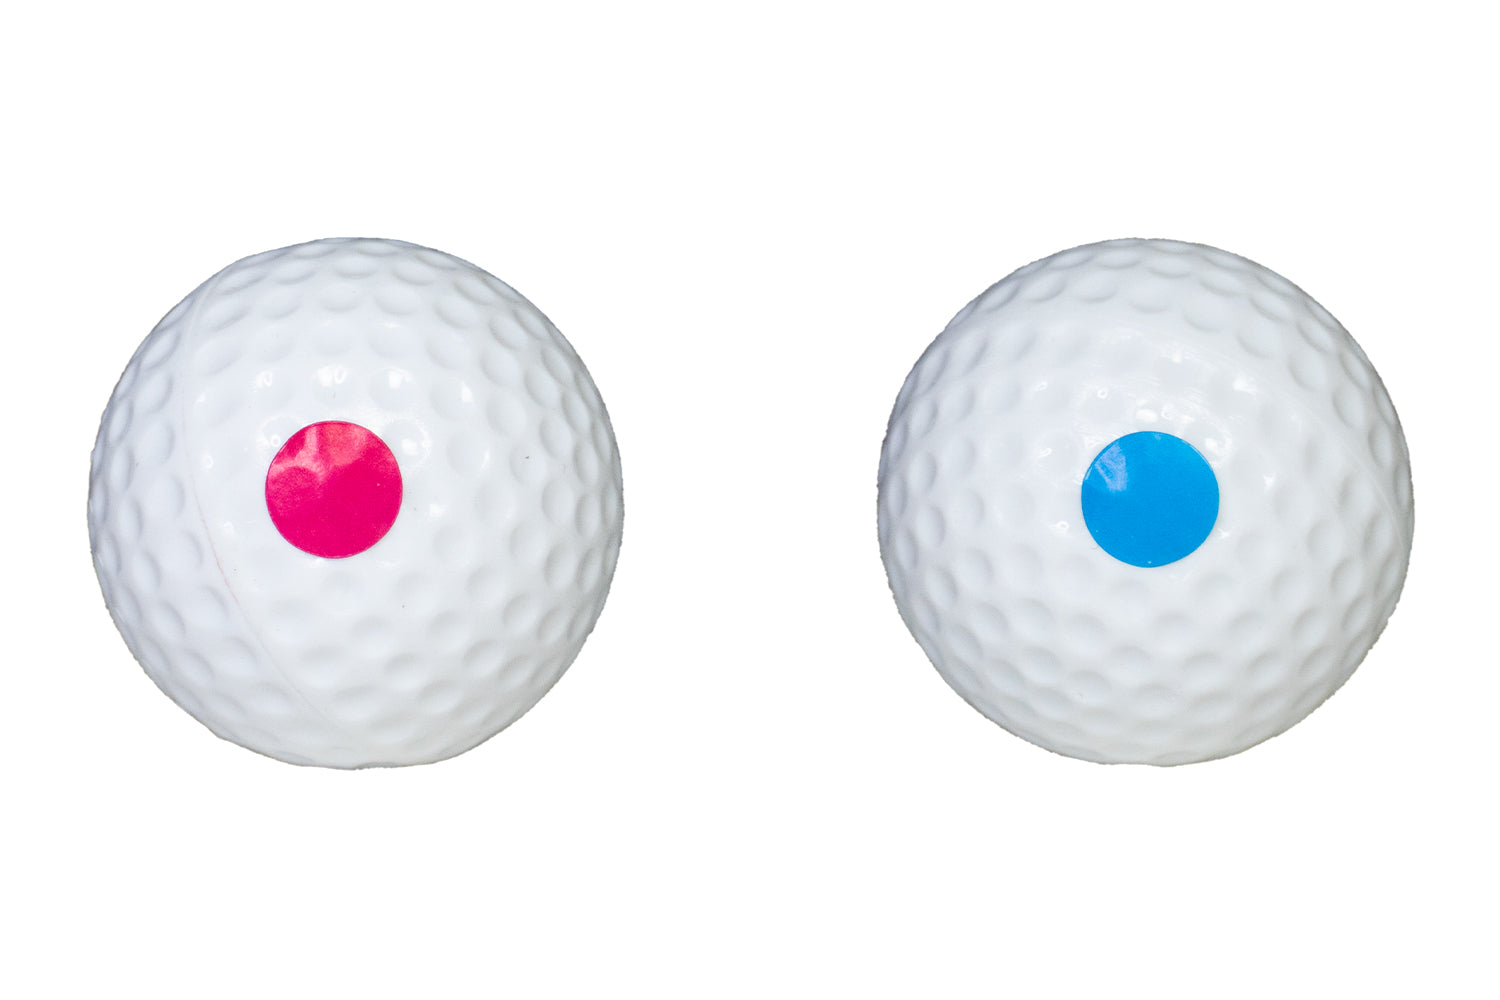 Event Lighting GOLFGENDER Golf balls set of 2 preloaded with pink and blue powder 